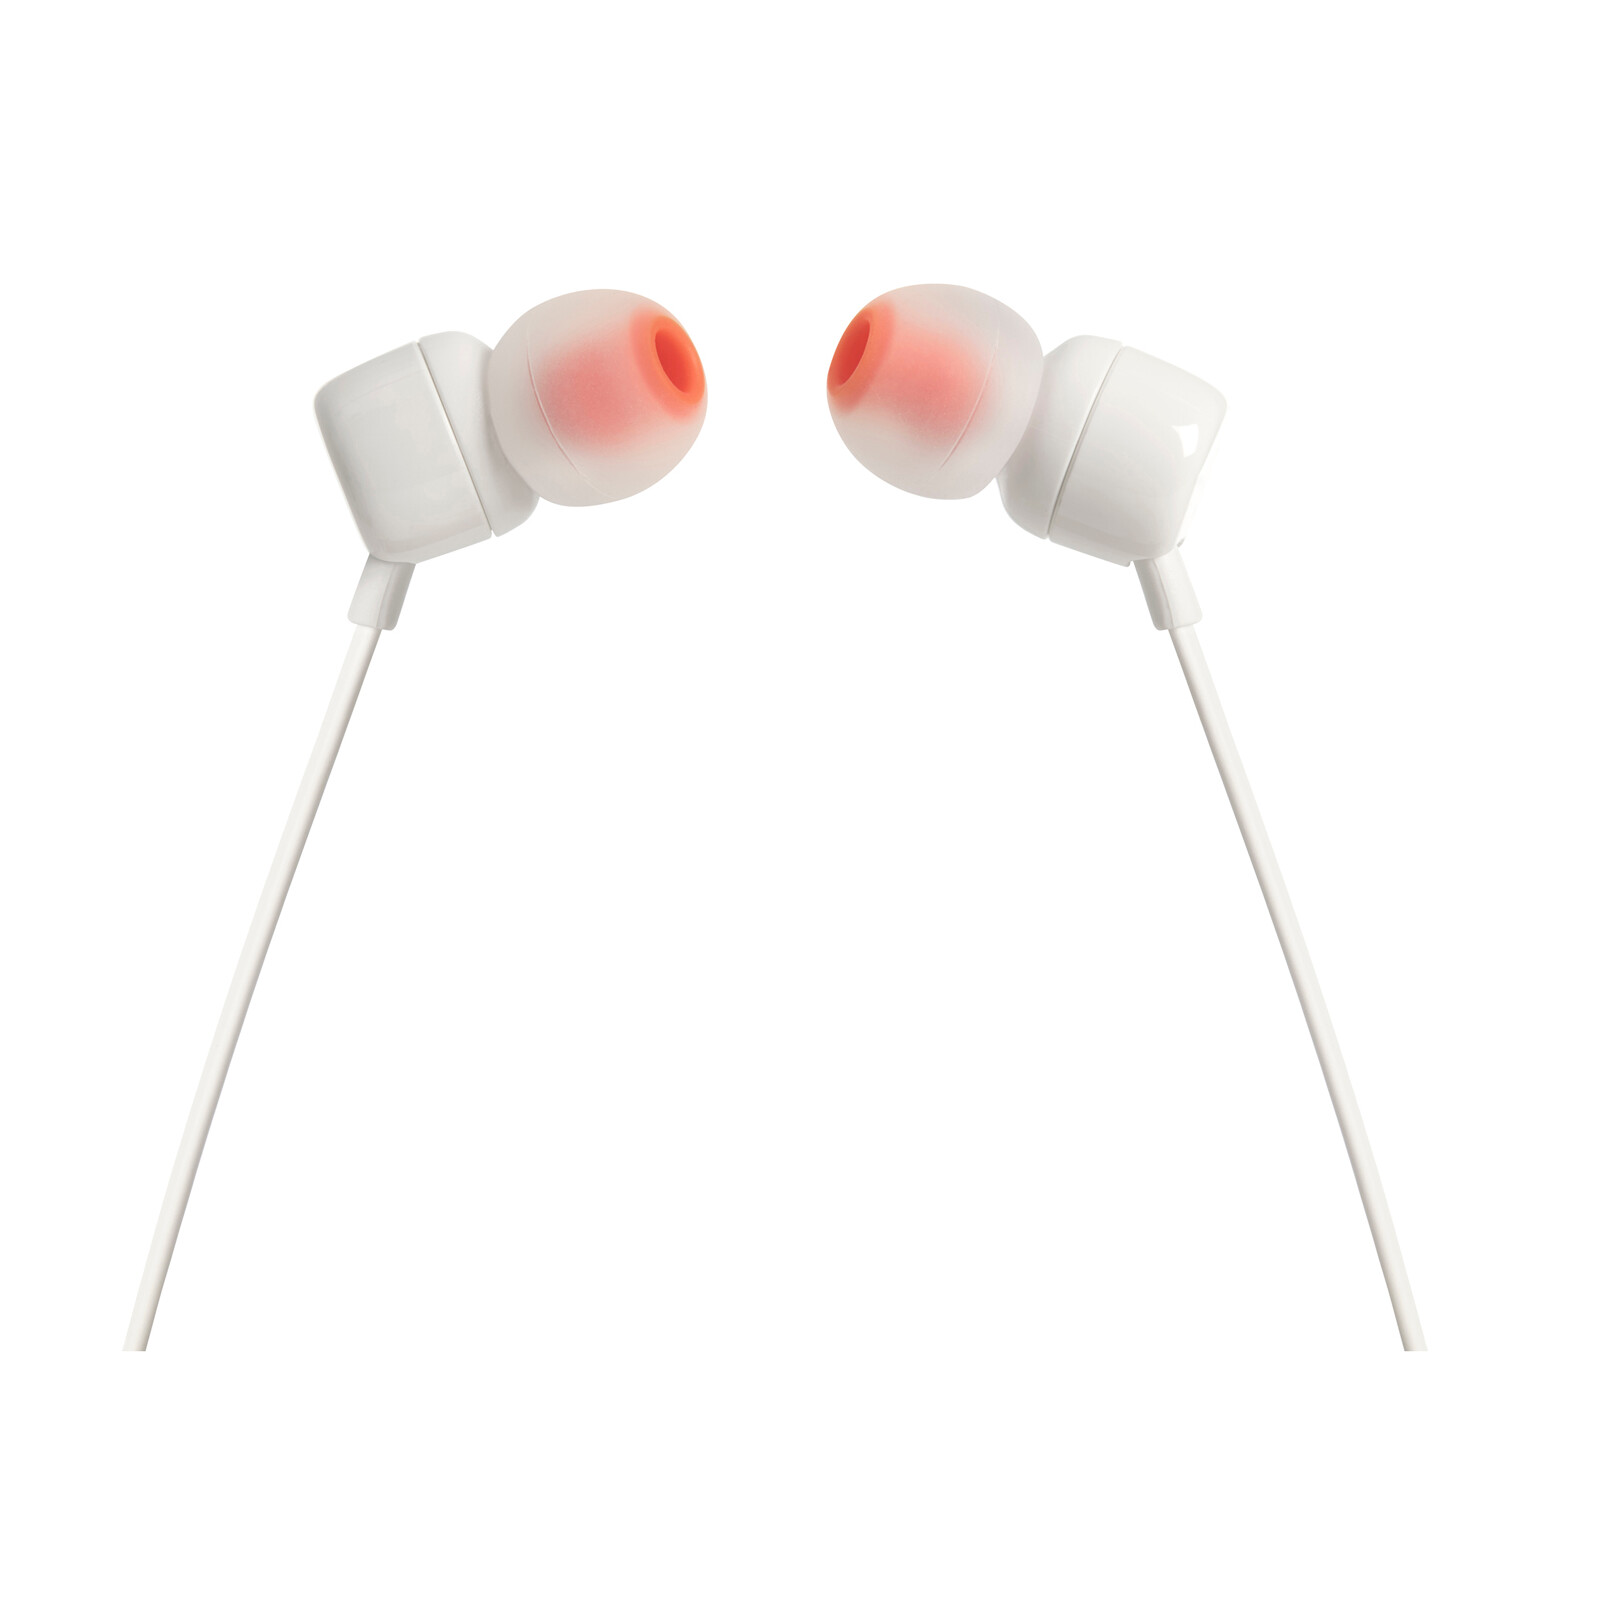 JBL T110 In-Ear Kopfhörer Weiß